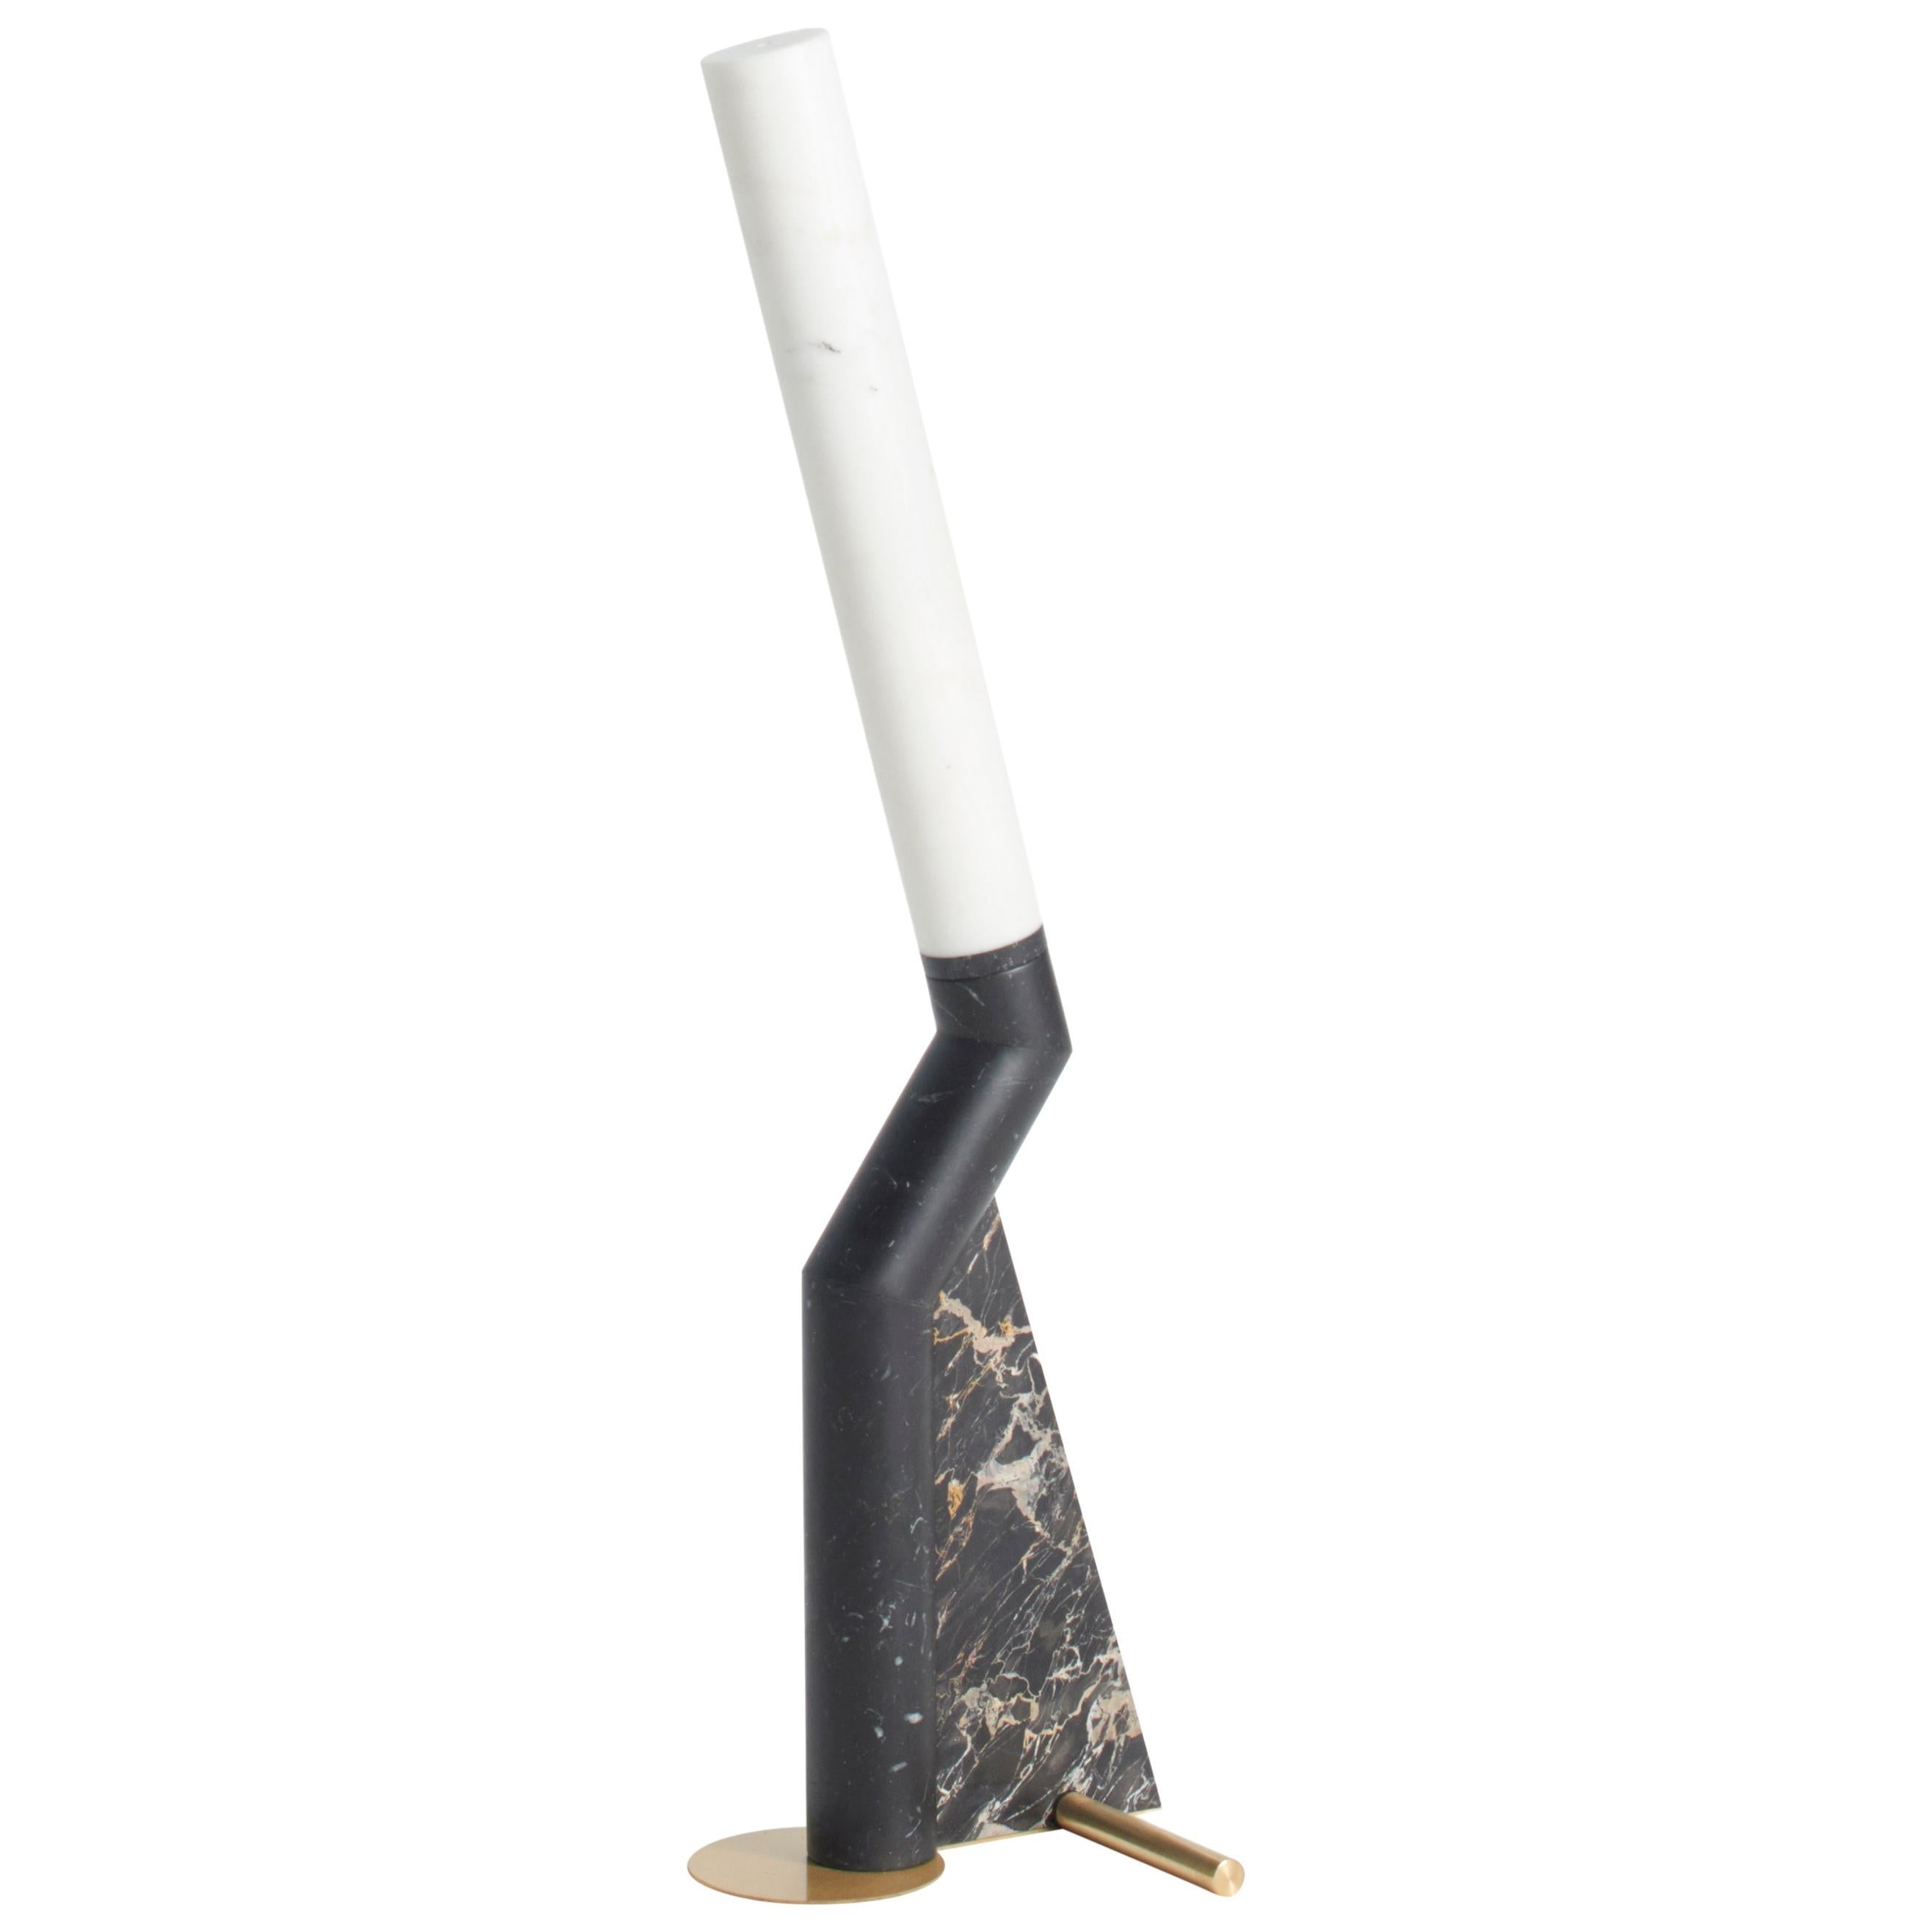 Schwarze Heron-Tischlampe von Bec Brittain